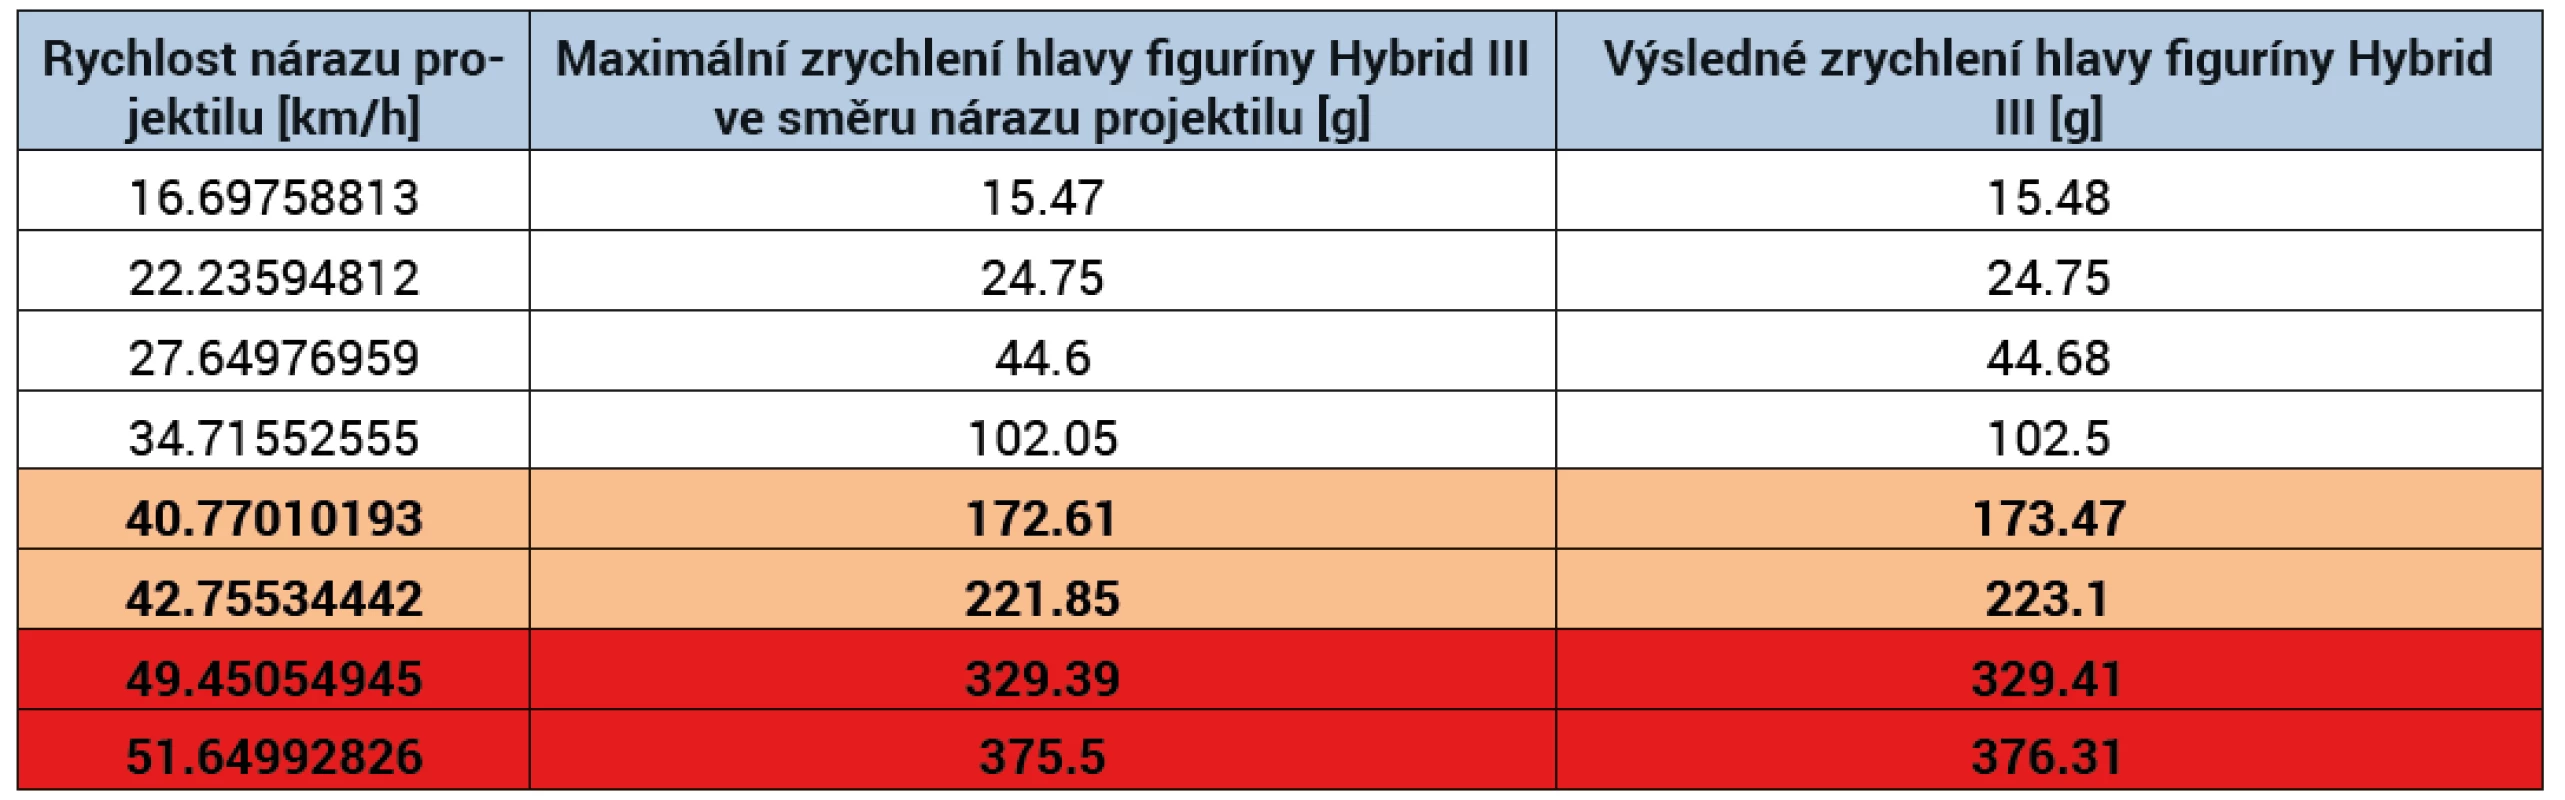 Hodnoty maximálního zrychlení hlavy figuríny Hybrid III